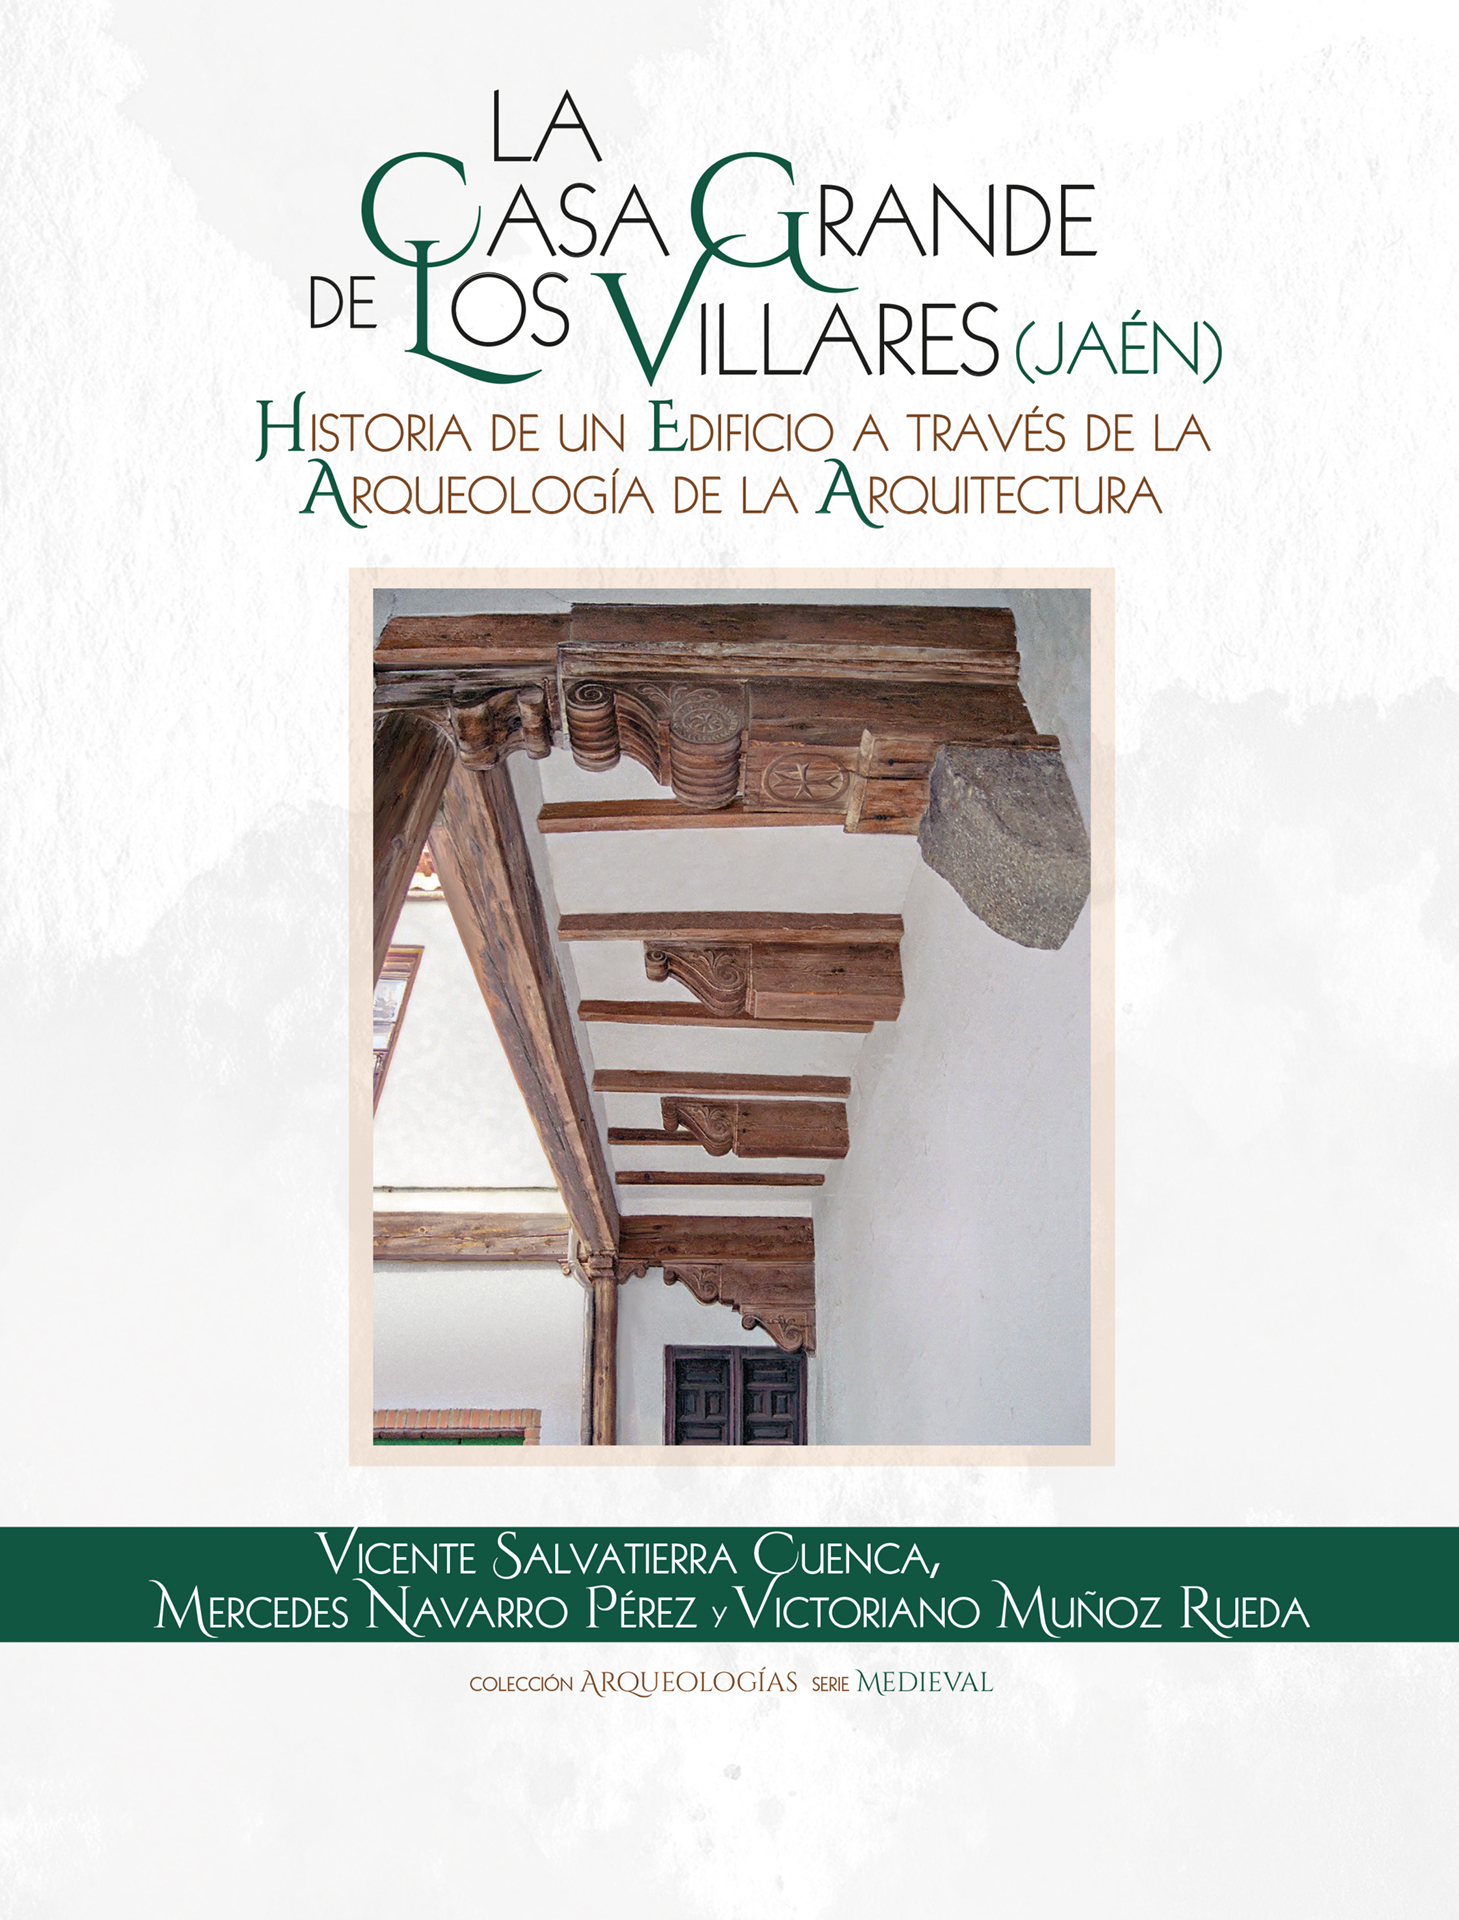 Imagen de portada del libro La Casa Grande de Los Villares (Jaén)